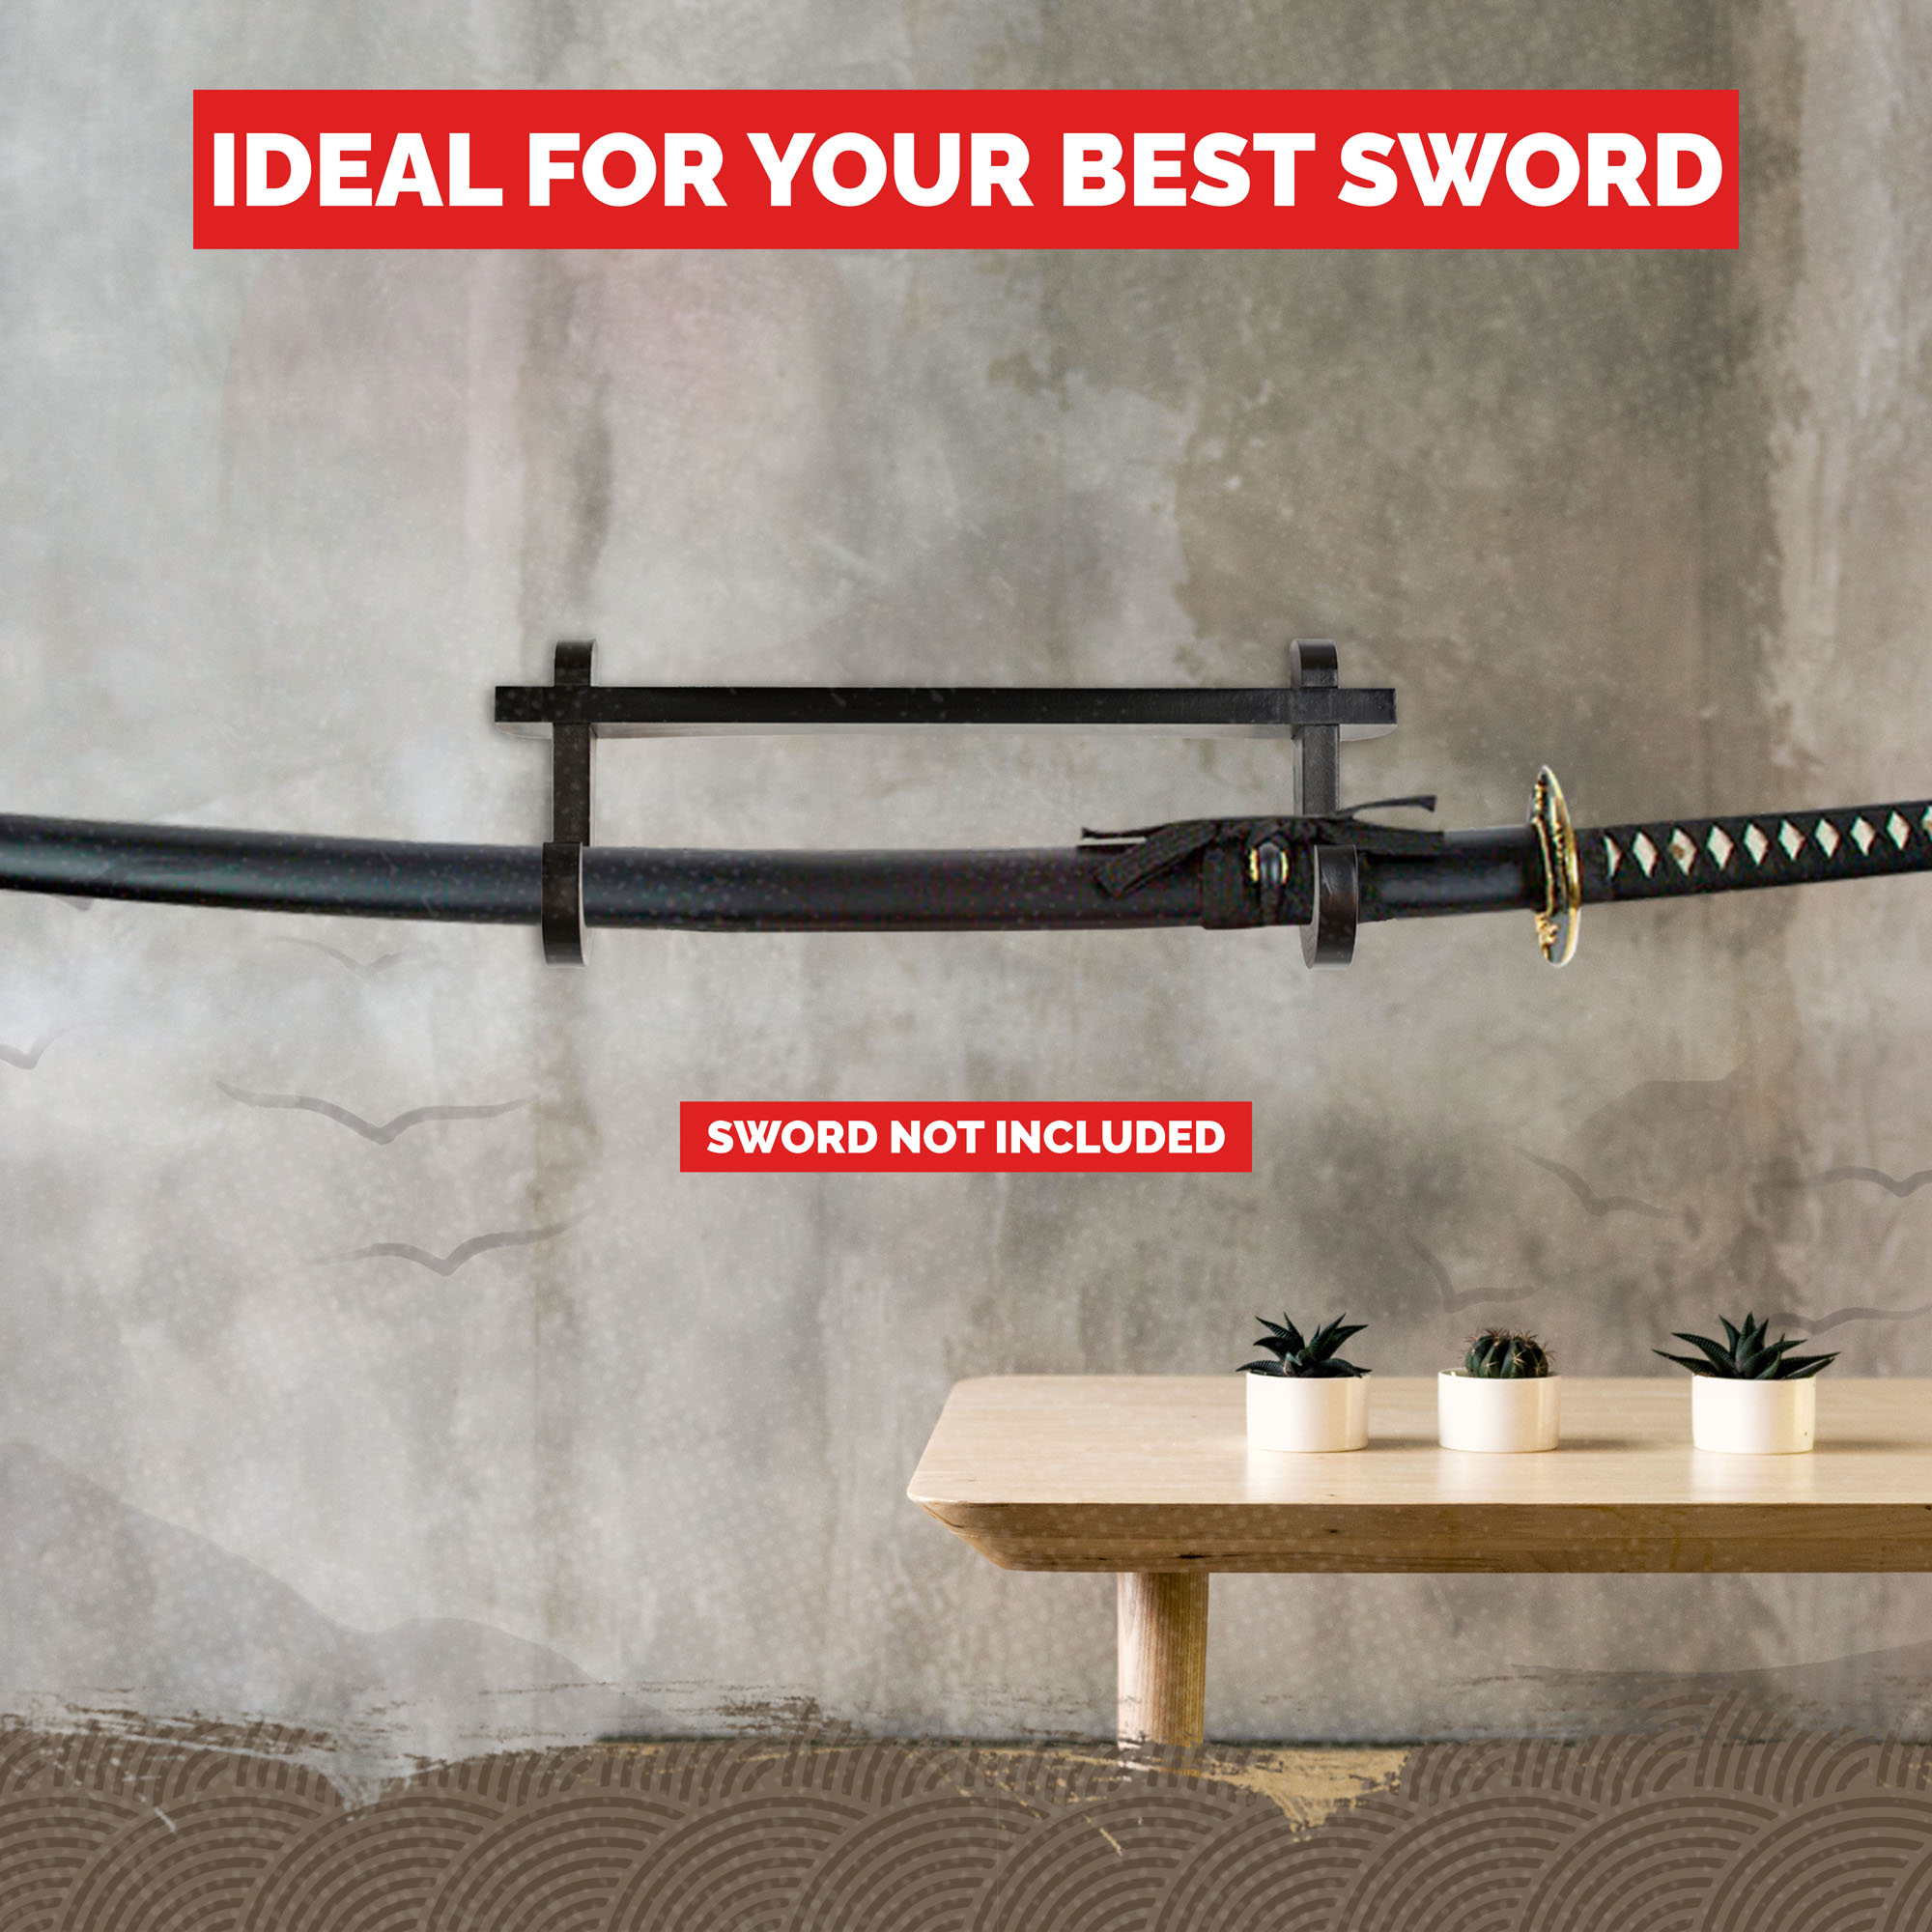 Wandhalter für 1 Samuraischwert